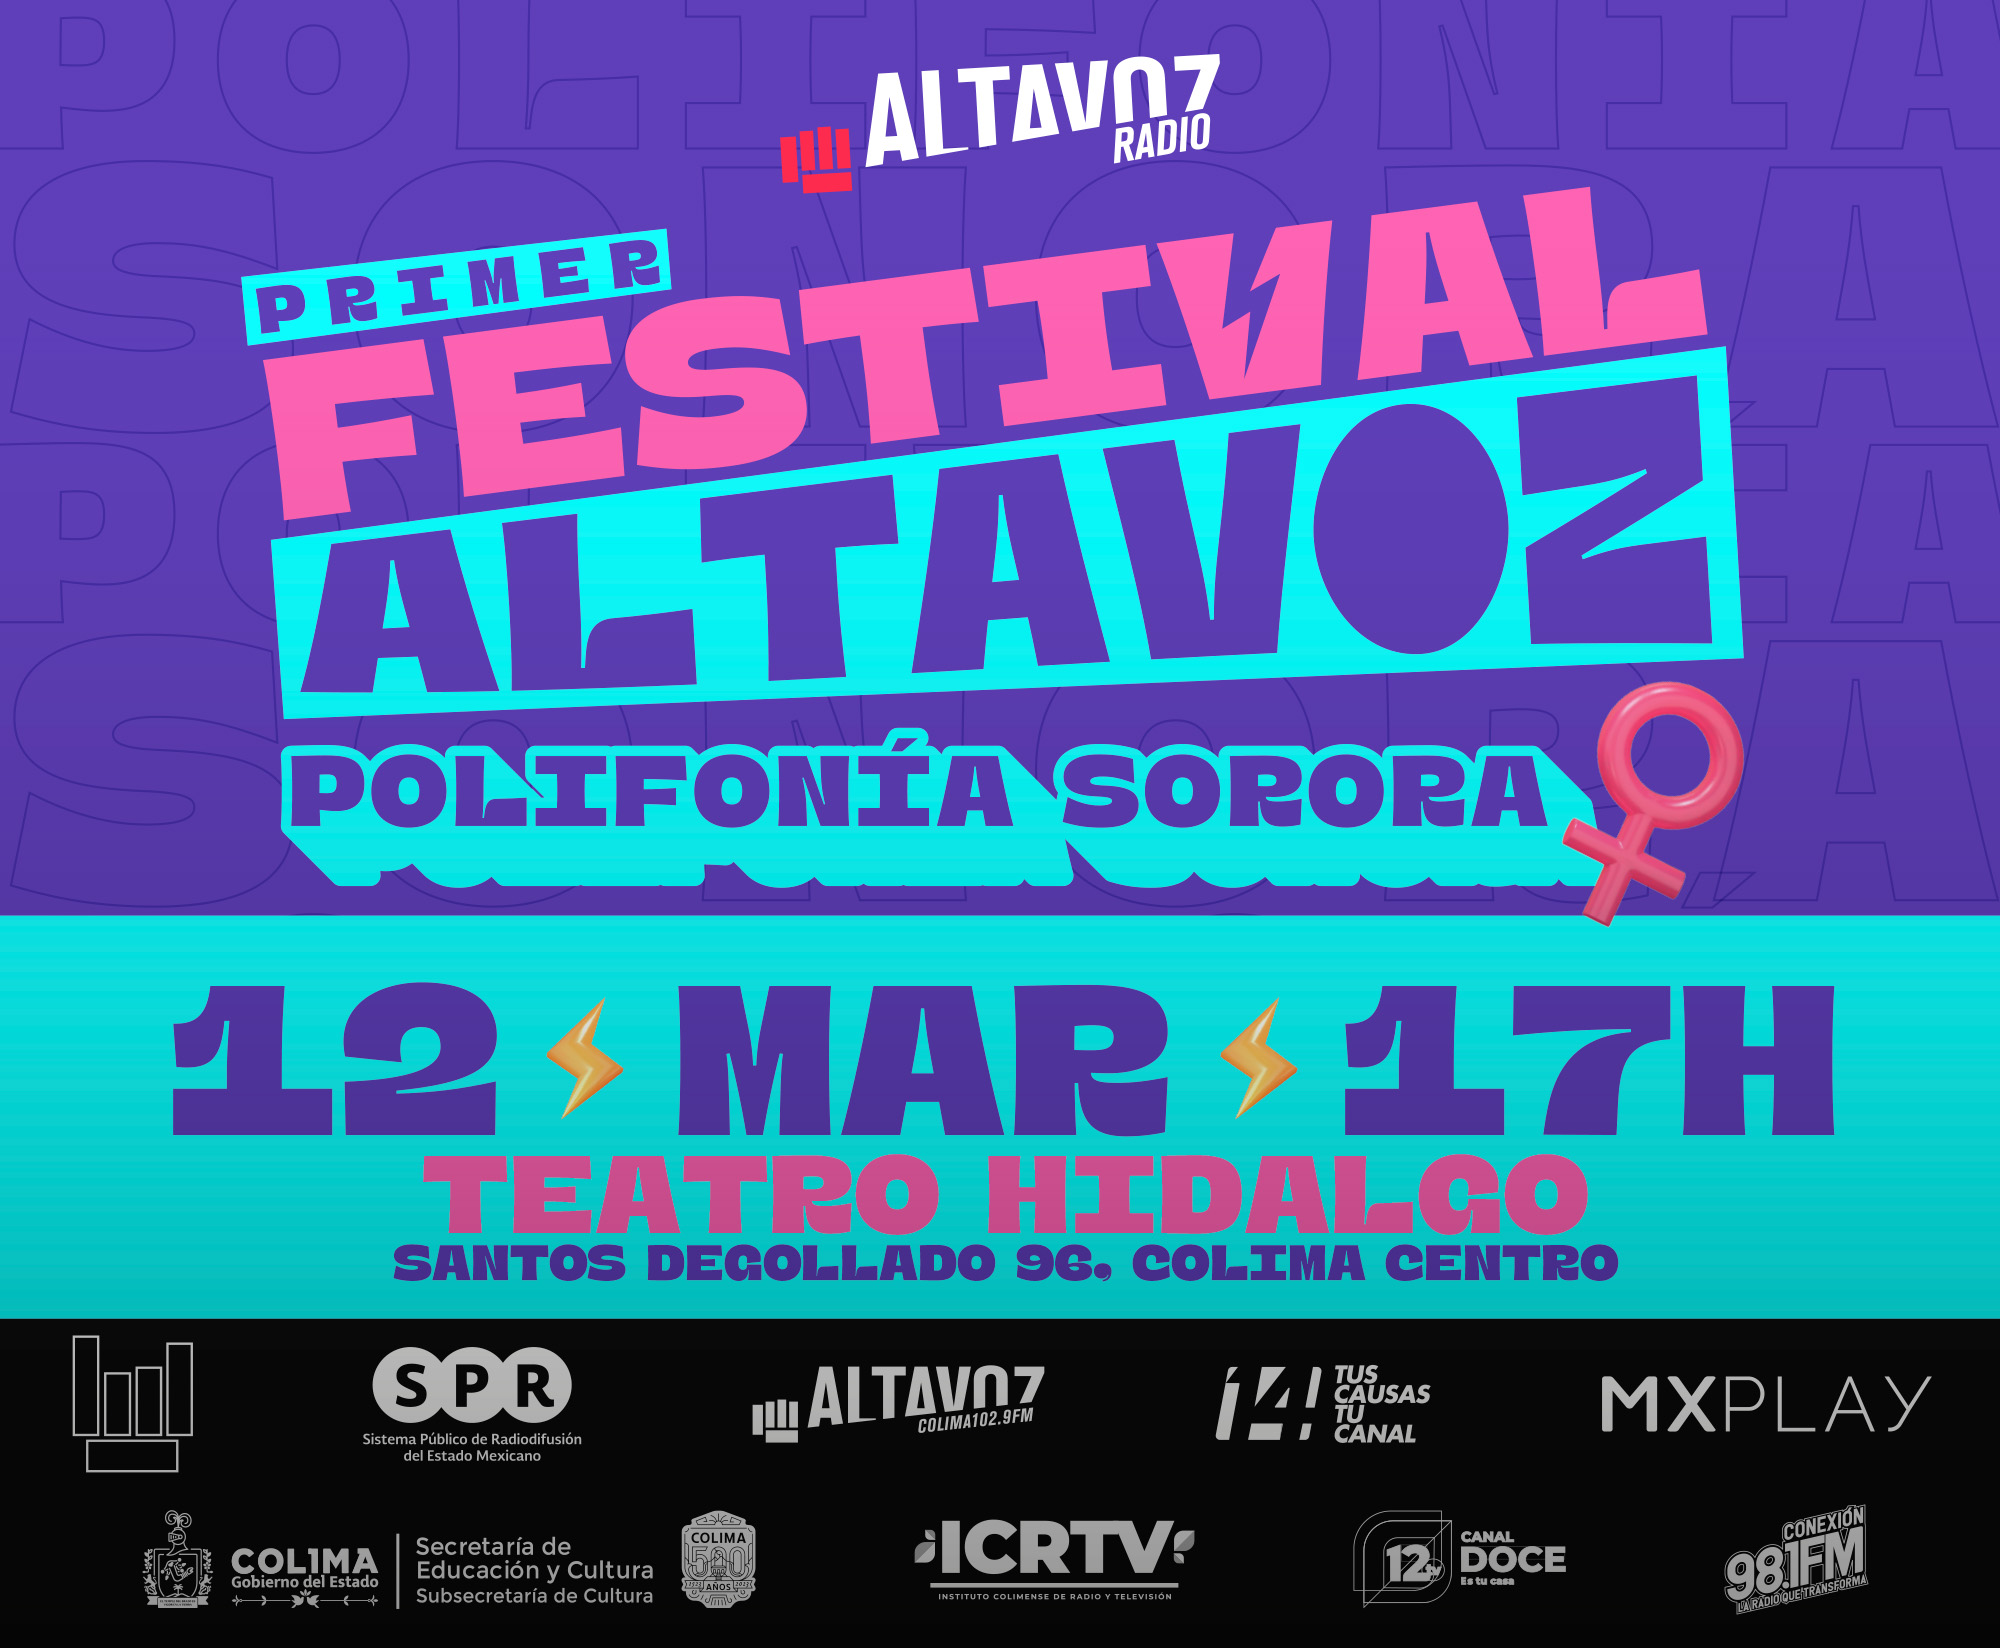 Altavoz Radio del SPR, la Subsecretaría de Cultura del Estado de Colima y el Instituto Colimense de Radio y Televisión realizarán el primer Festival Altavoz: Polifonía Sorora, el 12 de marzo de 2023, en la ciudad de Colima.